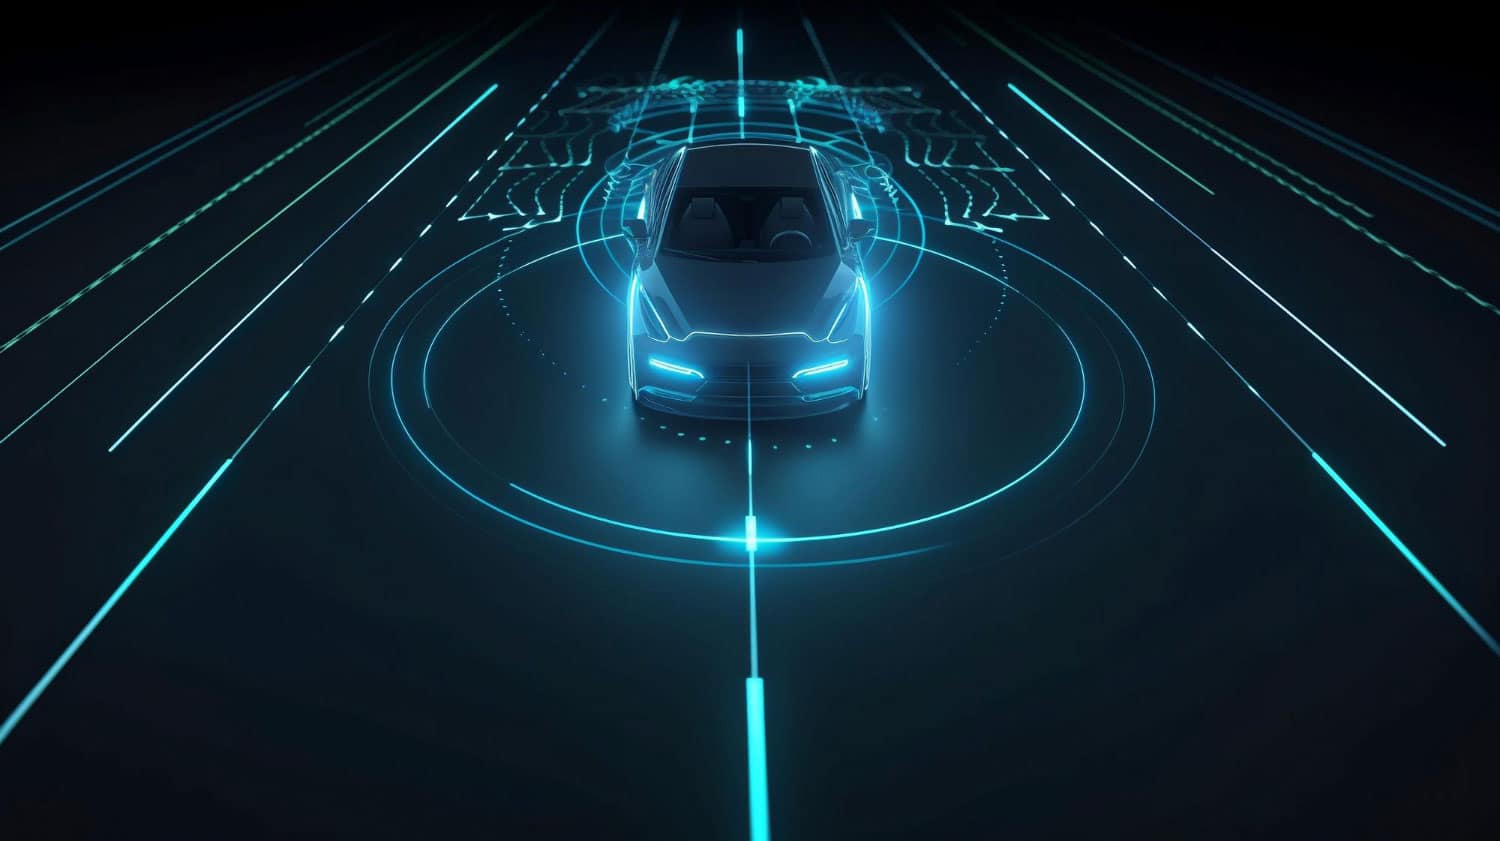 Autonomous automobile sensor system concept for the safety